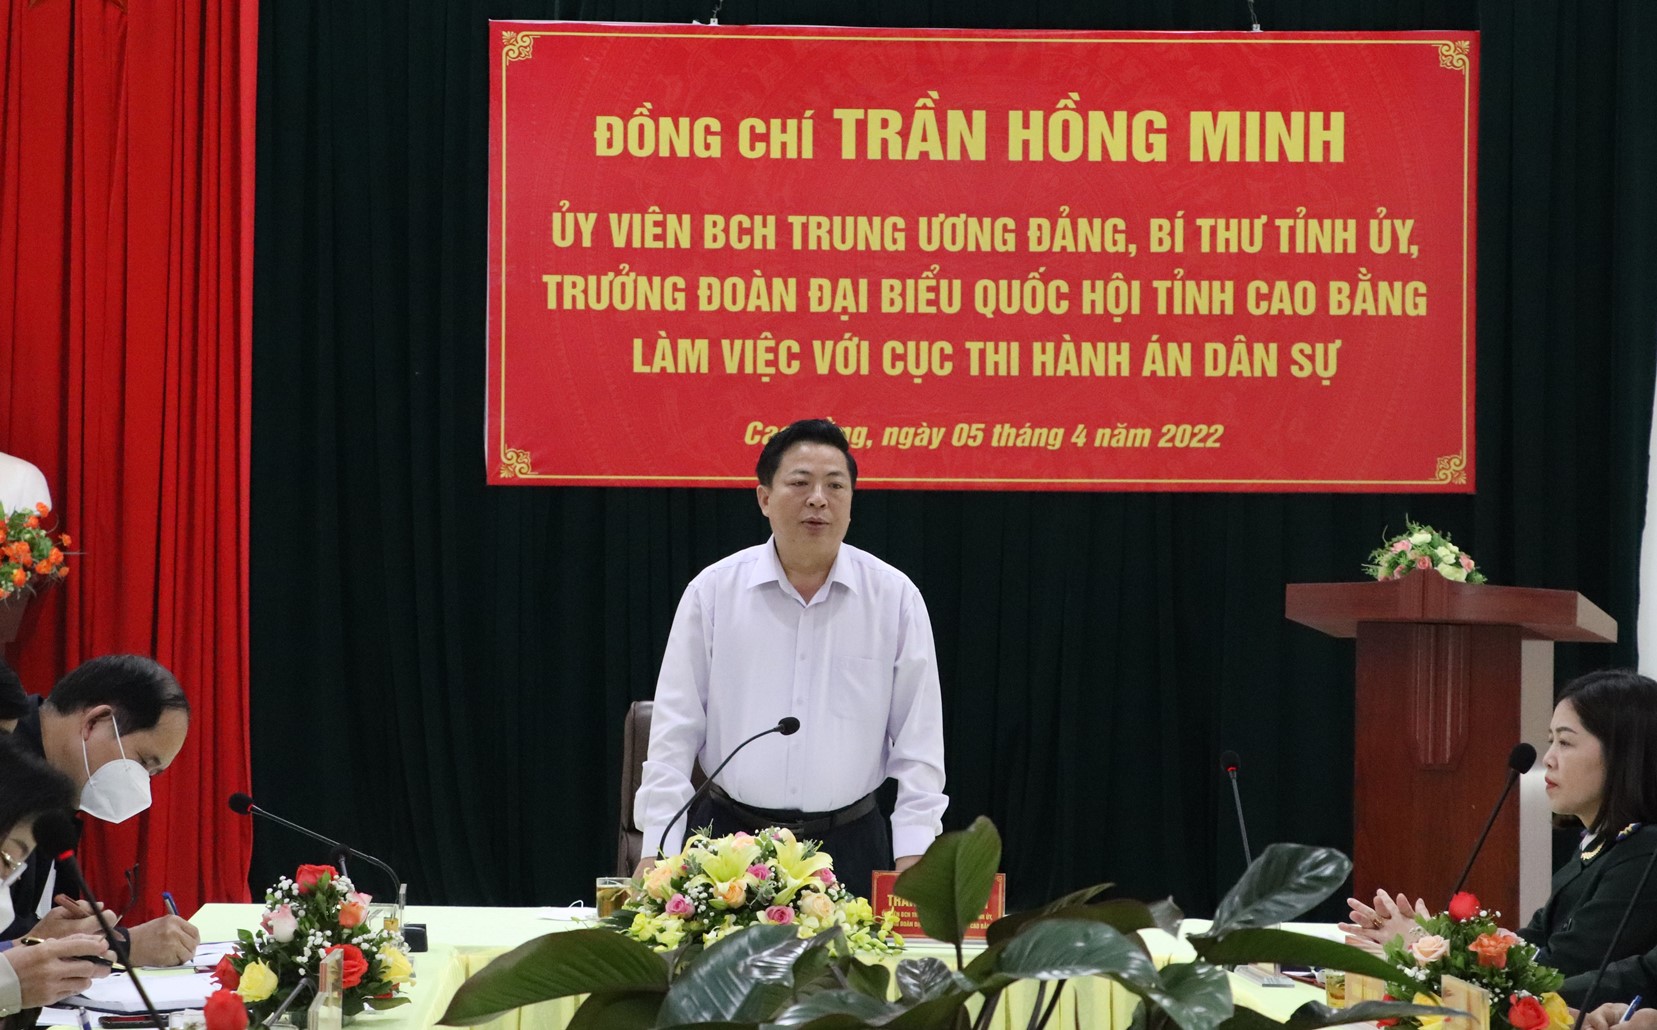 Đồng chí Trần Hồng Minh - Bí thư Tỉnh ủy tỉnh Cao Bằng thăm và làm việc tại Cục Thi hành án dân sự